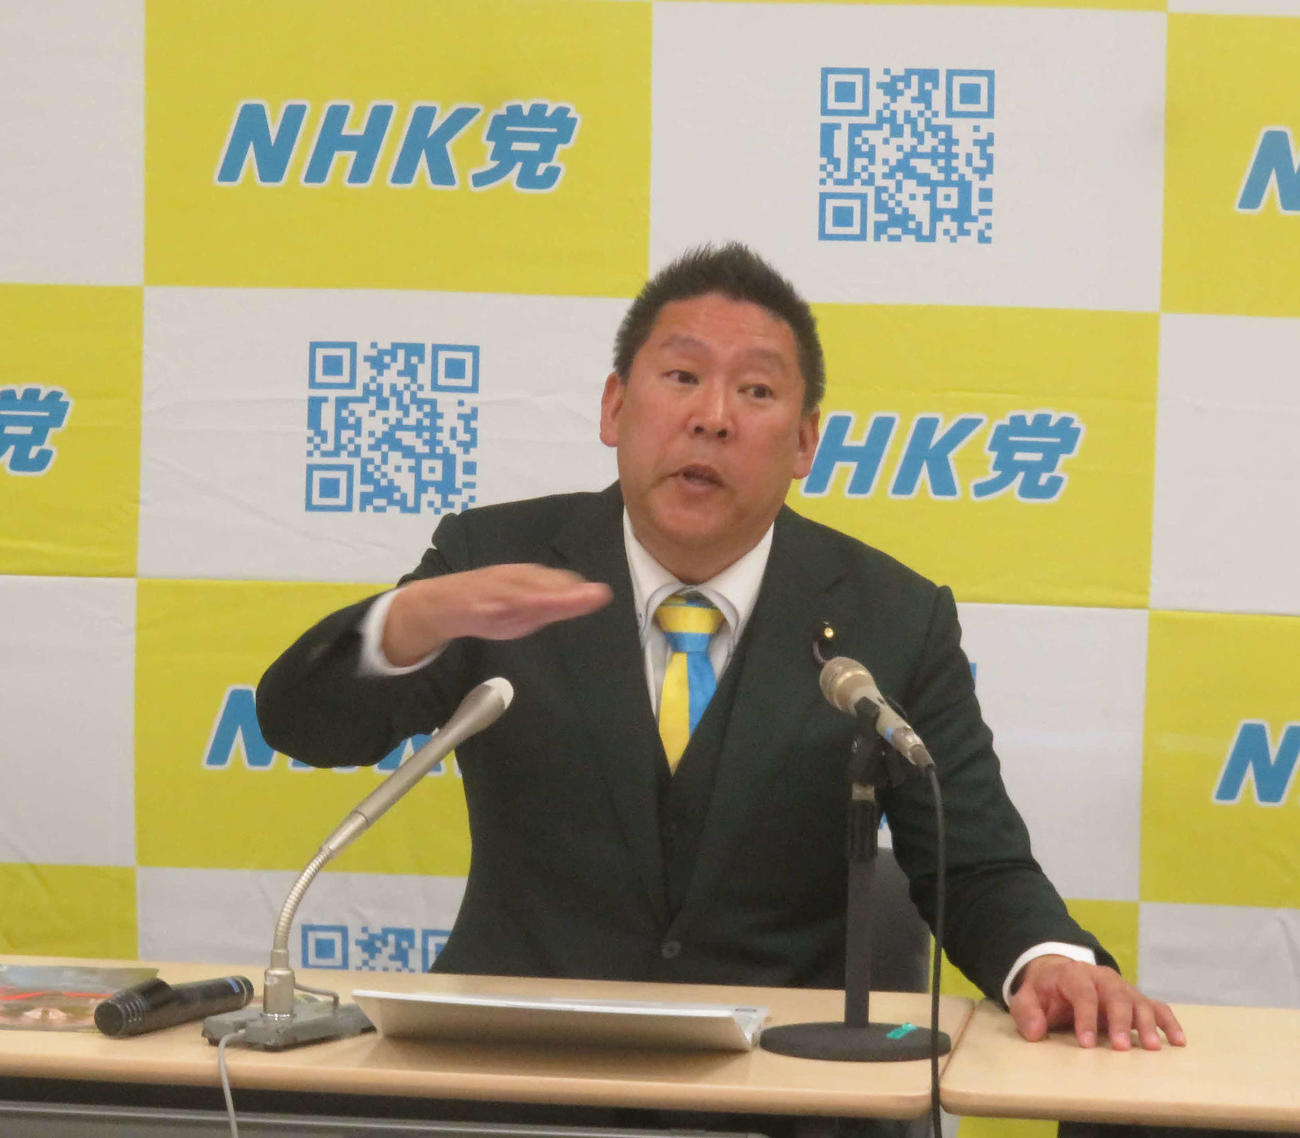 NHK党の立花孝志党首はガーシー参院議員に対する懲罰について反論した（撮影・大上悟）